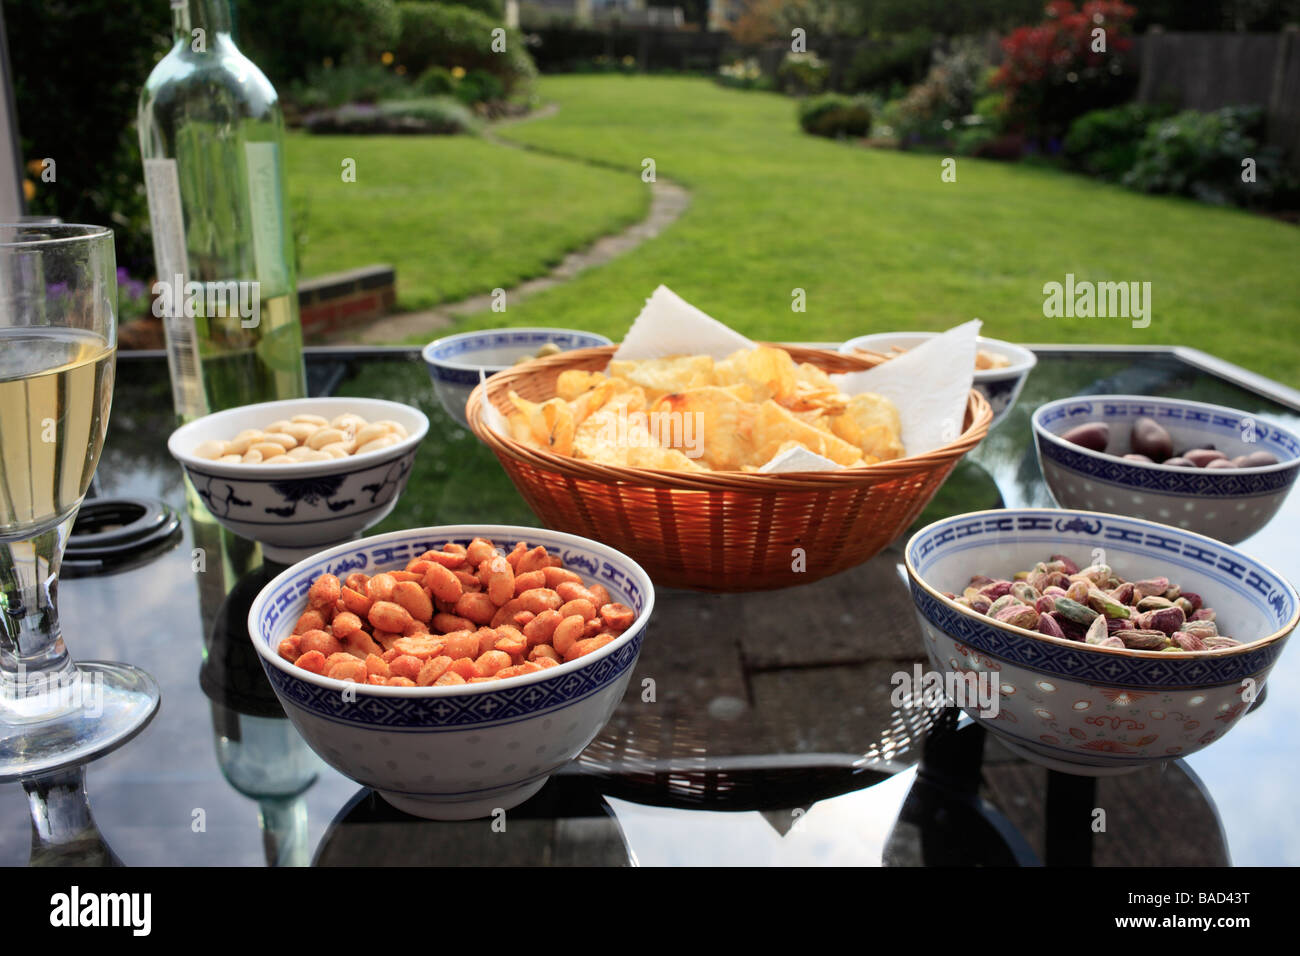 Selection of Savoury snacks. Stock Photo